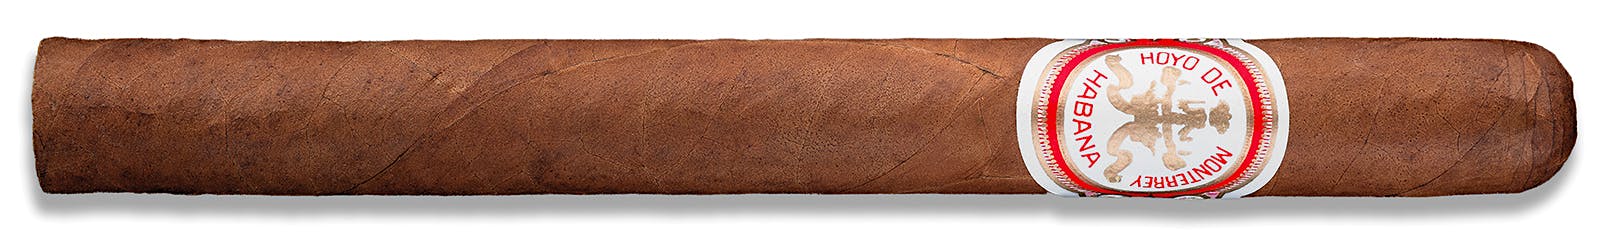 Hoyo de Monterrey Double Corona cigar